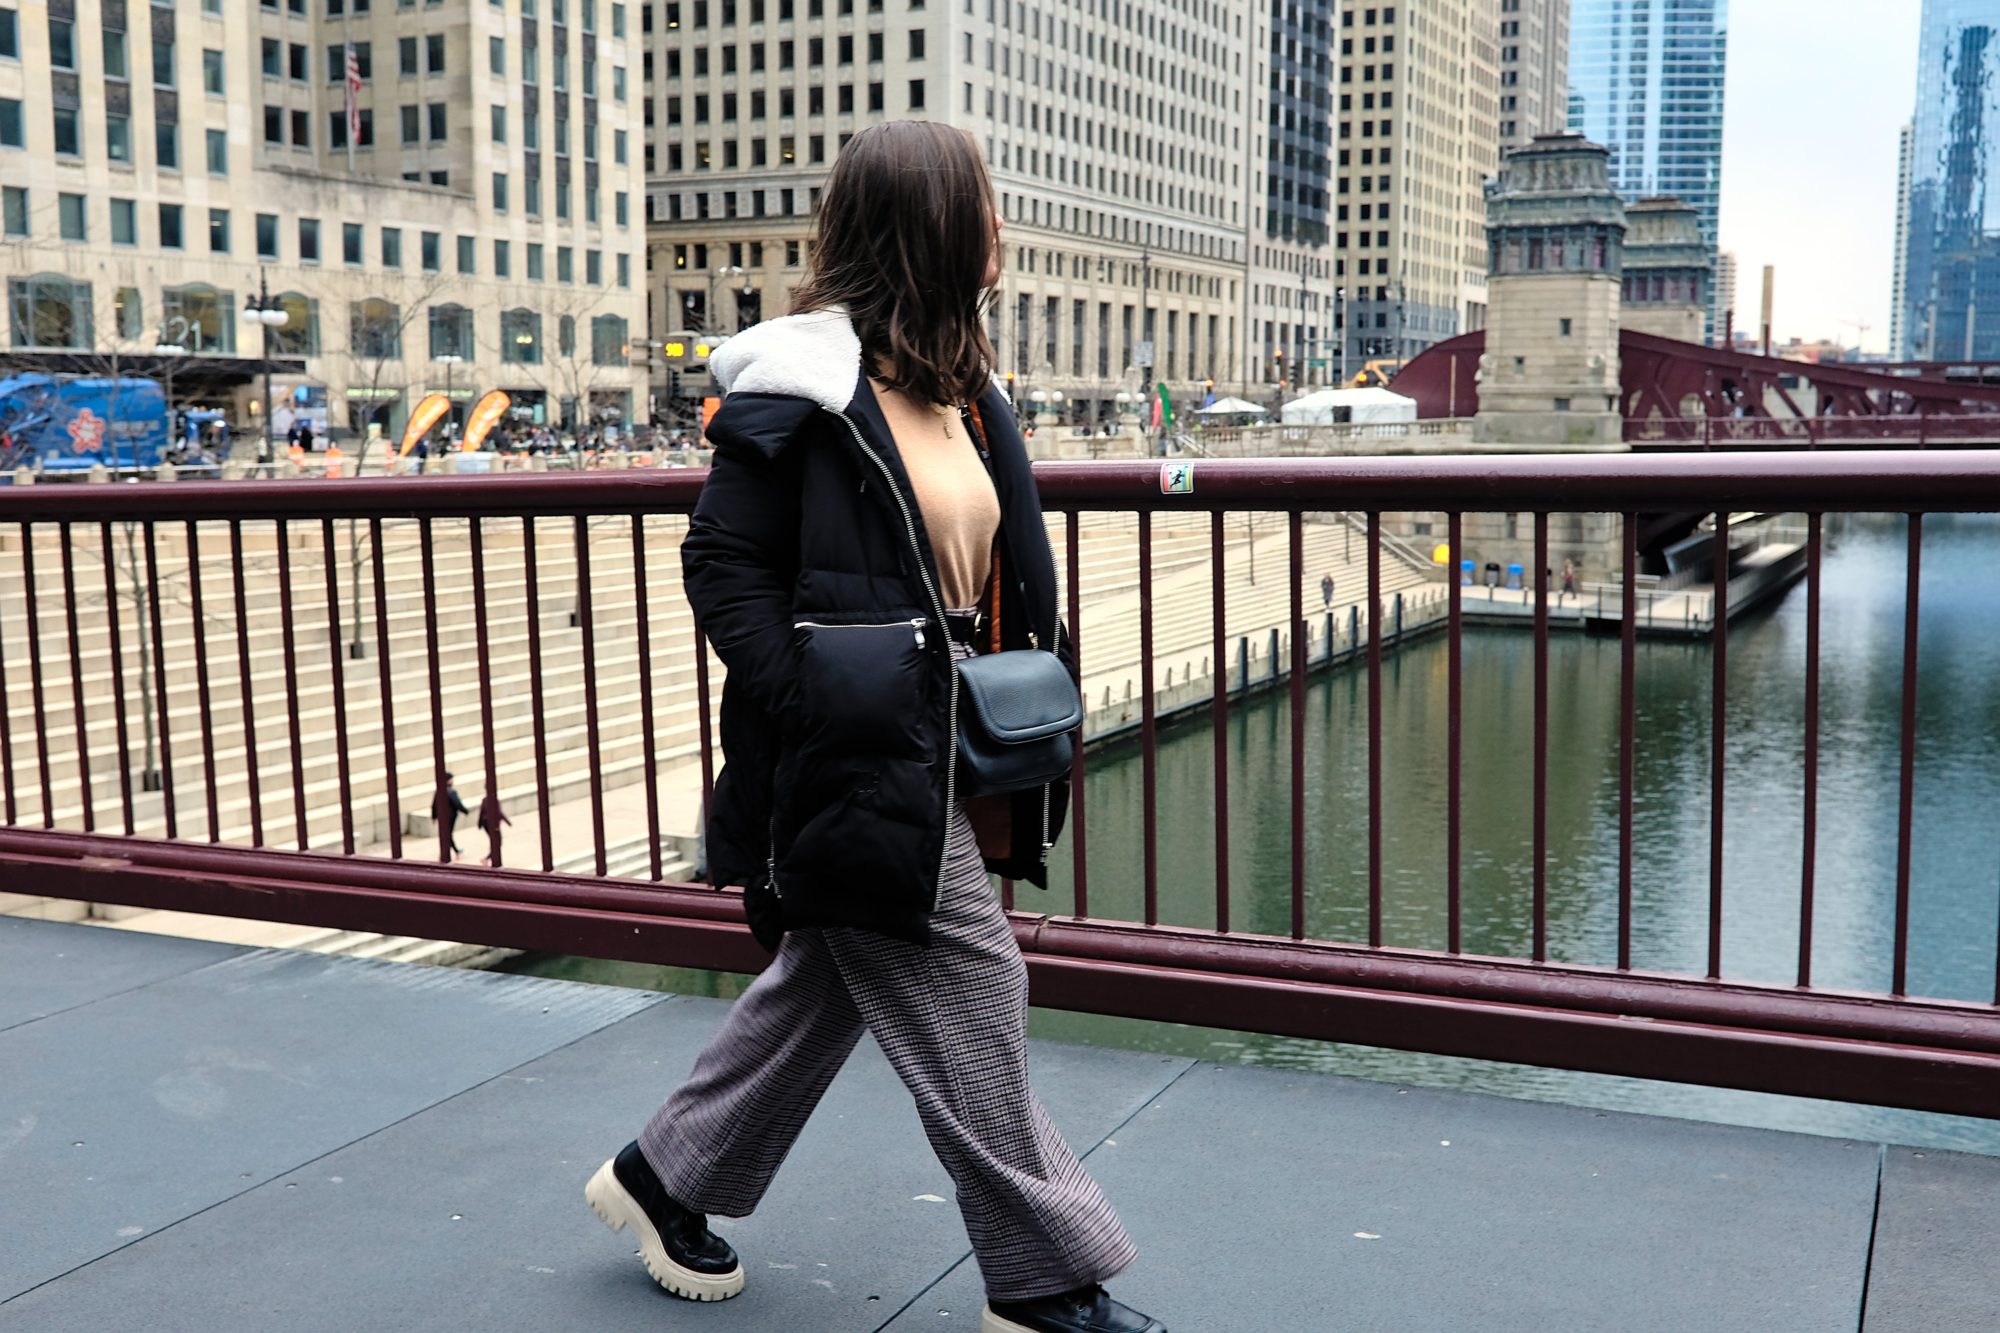 Alyssa crosses the Chicago River on a bridge